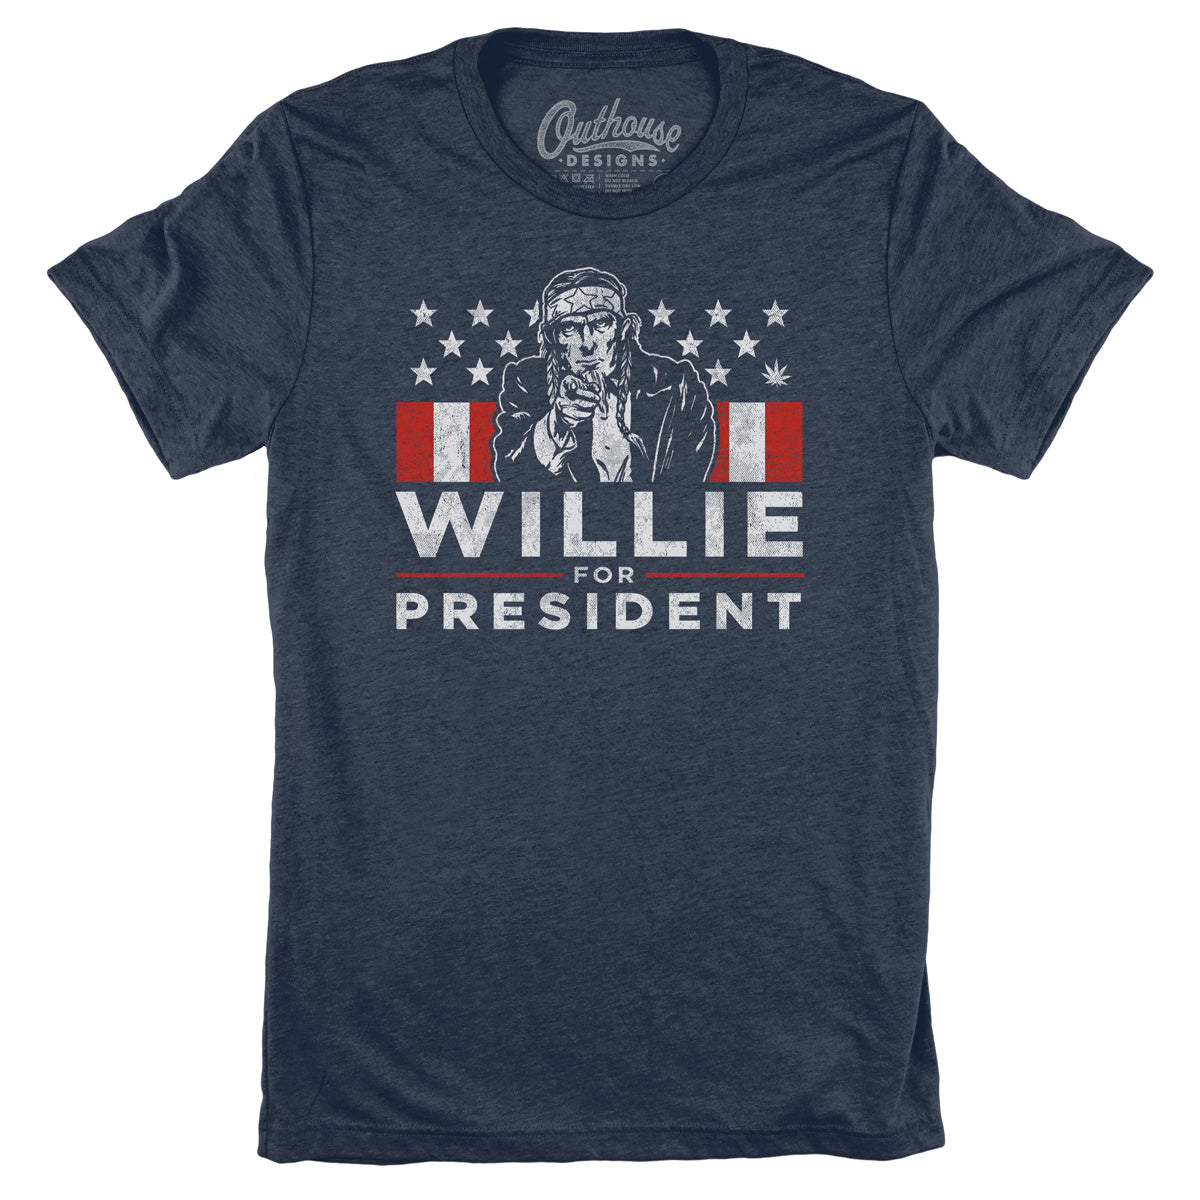 Willie for President Tee